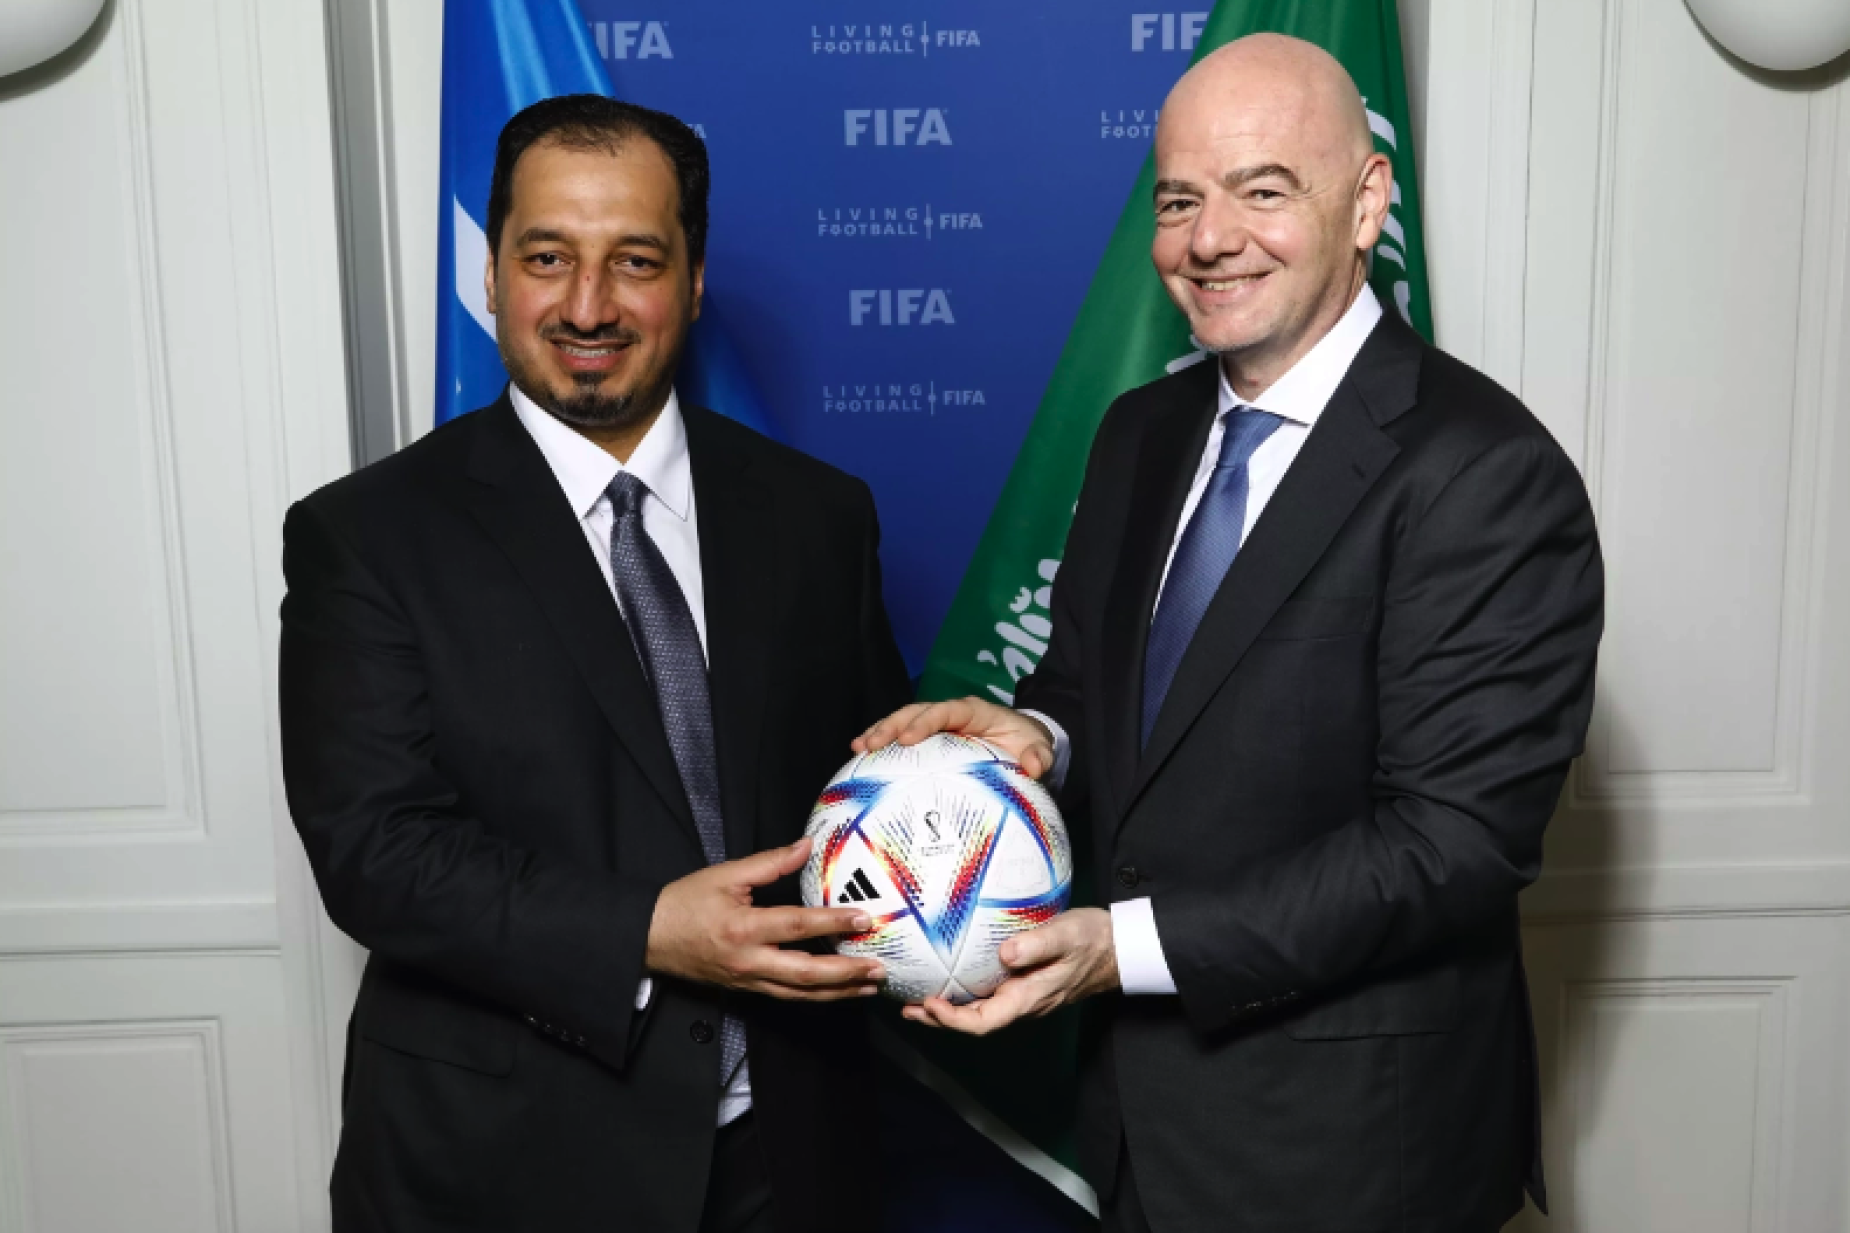 Mundial de Clubes: Fifa define a cidade na Arábia Saudita que